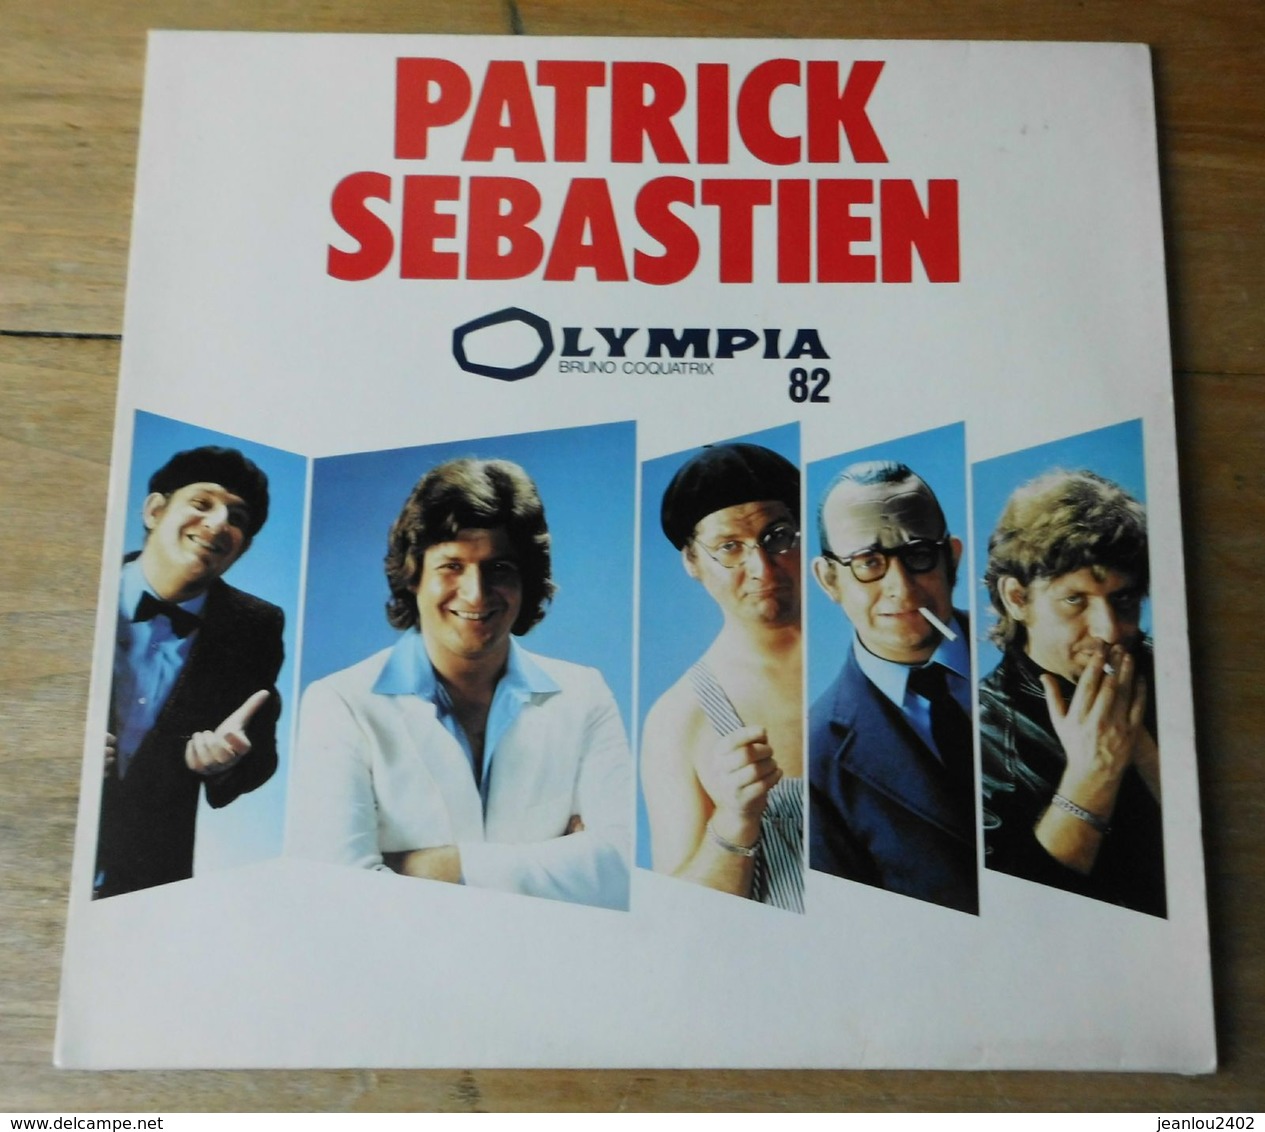 Vinyle "Patrick Sebastien" "Olympia 82" - Humour, Cabaret